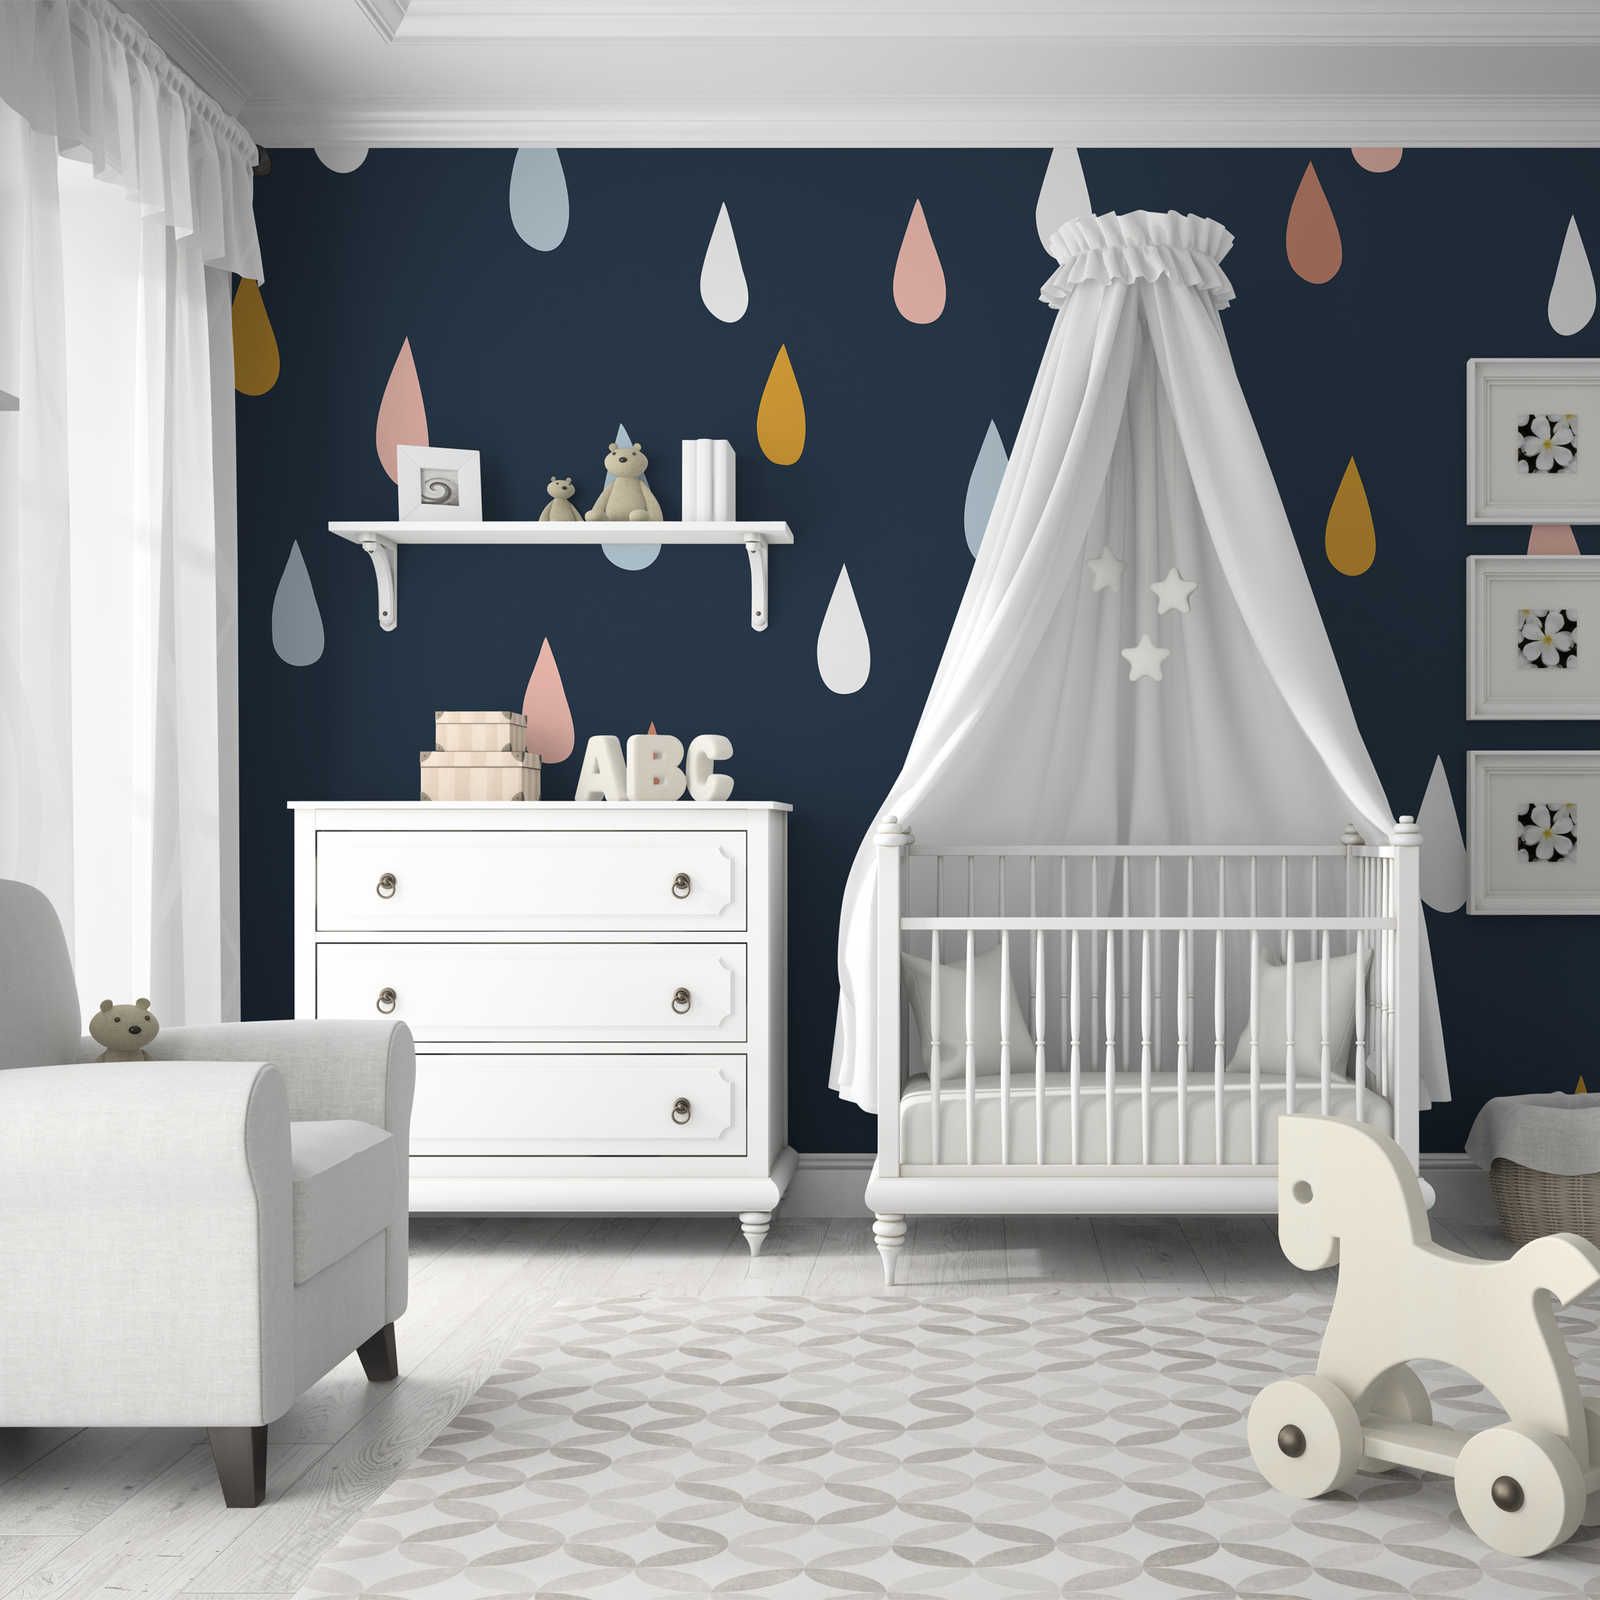 Fototapete fürs Kinderzimmer mit bunten Tropfen – Glattes & mattes Vlies
